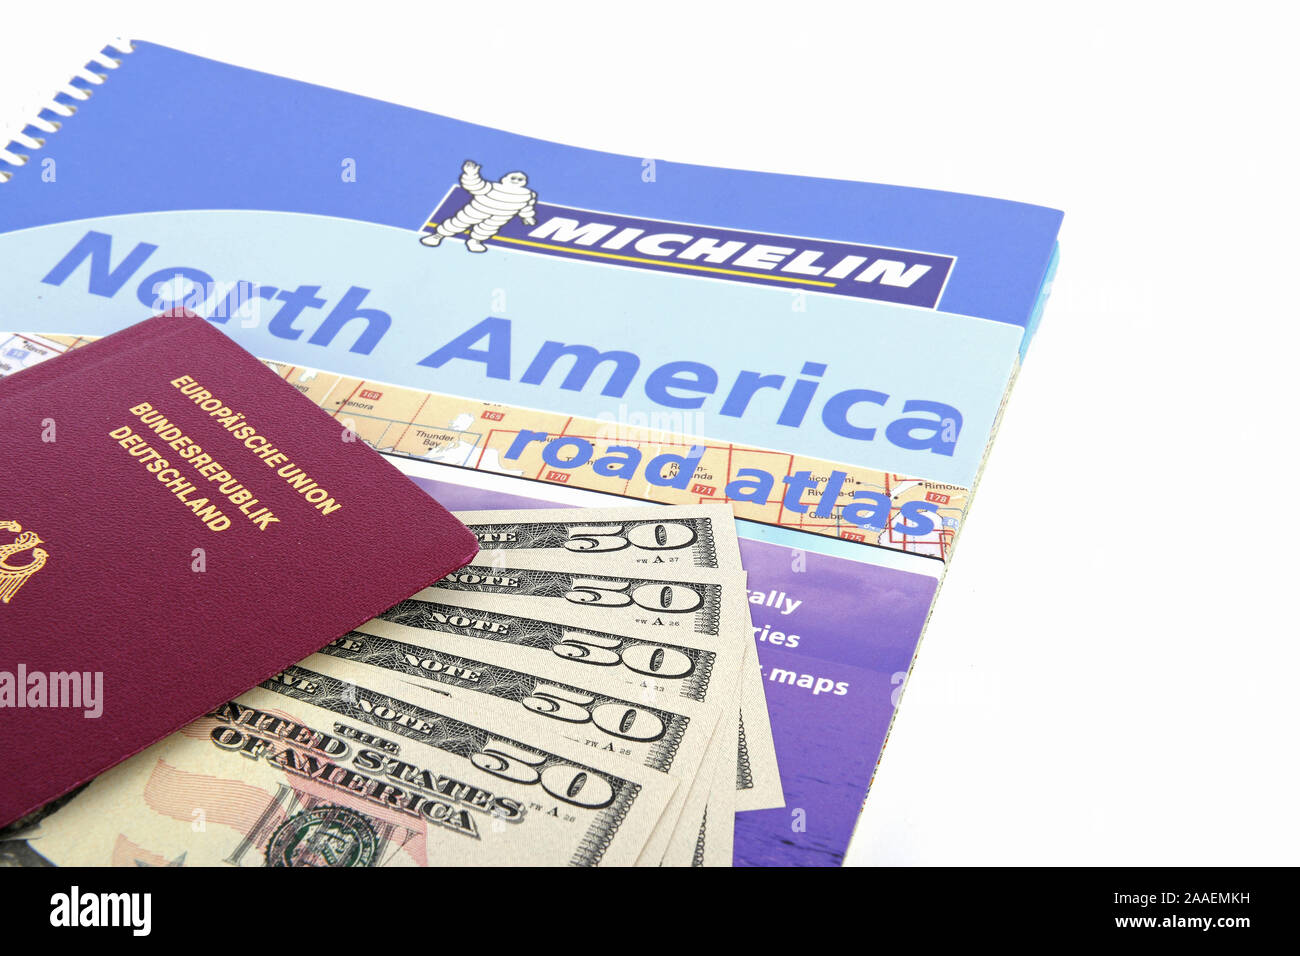 Reiseführer USA, Südwesten, Reisepass Bundesrepublik Deutschland, mehrere 50 Dollarscheine, Strassenatlas Nordamerika, Symbolbild Reisenplanung USA Stock Photo